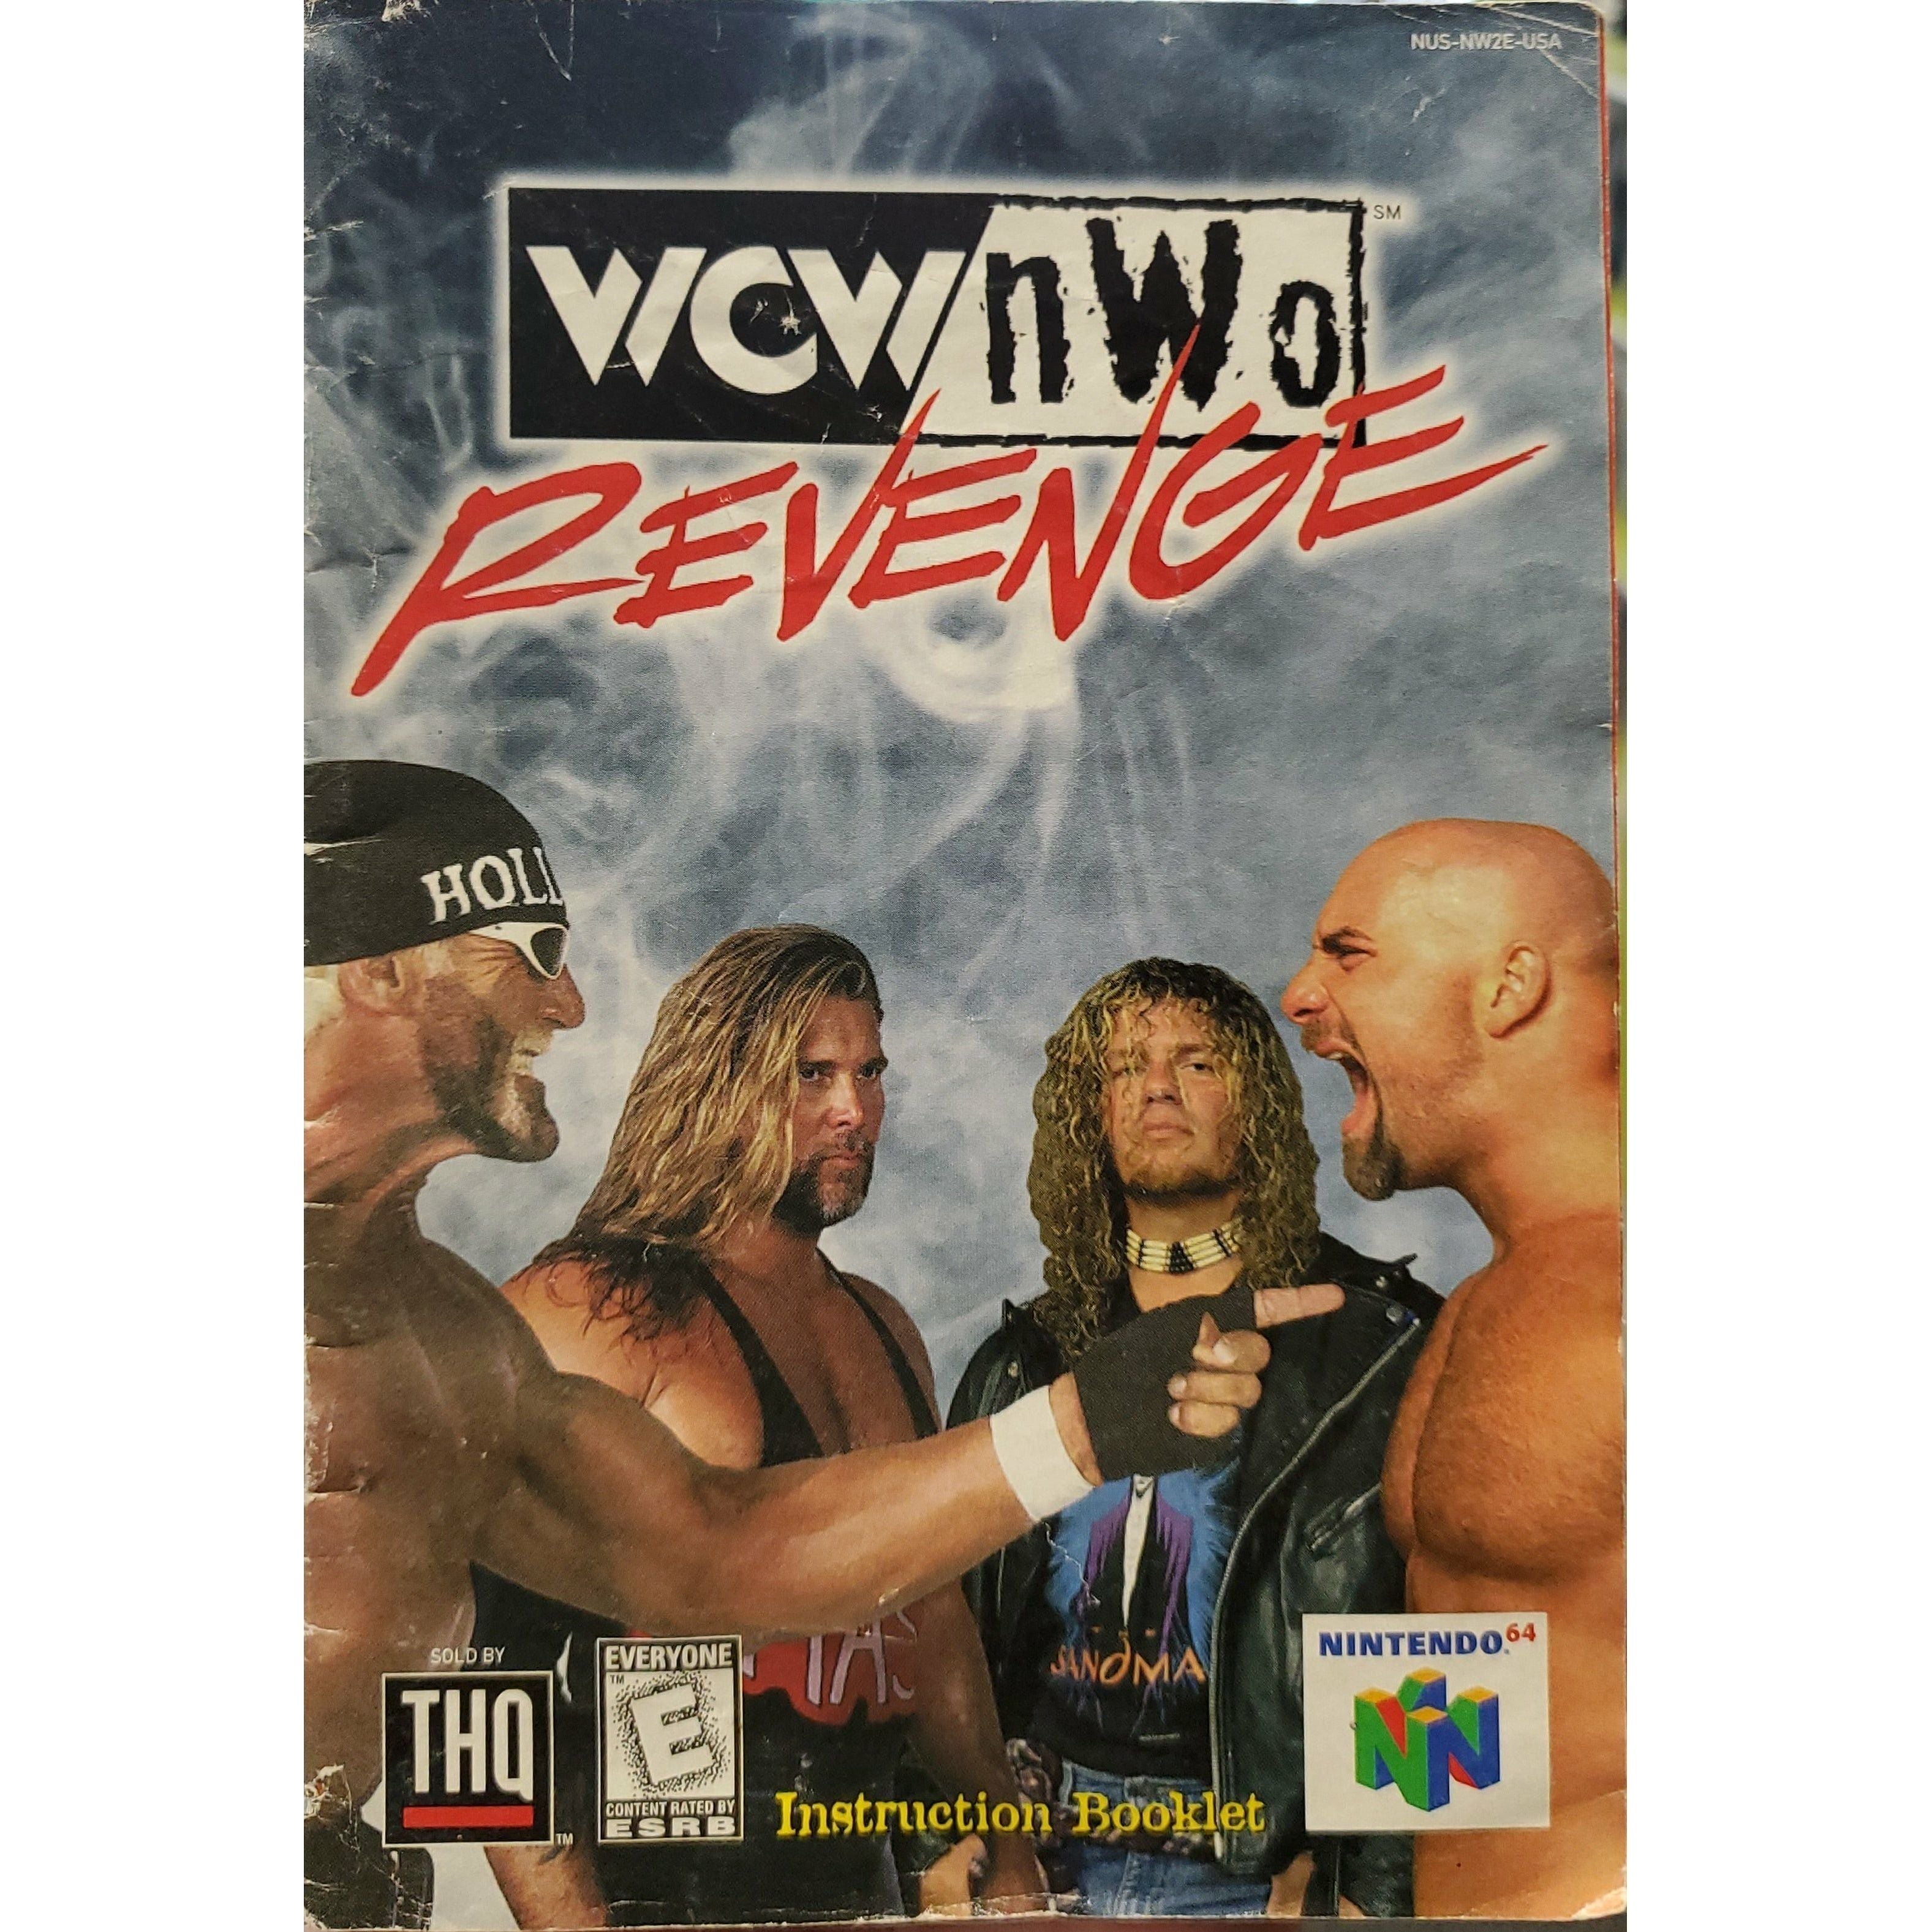 N64 - WCW/NWO Revenge (Manual)